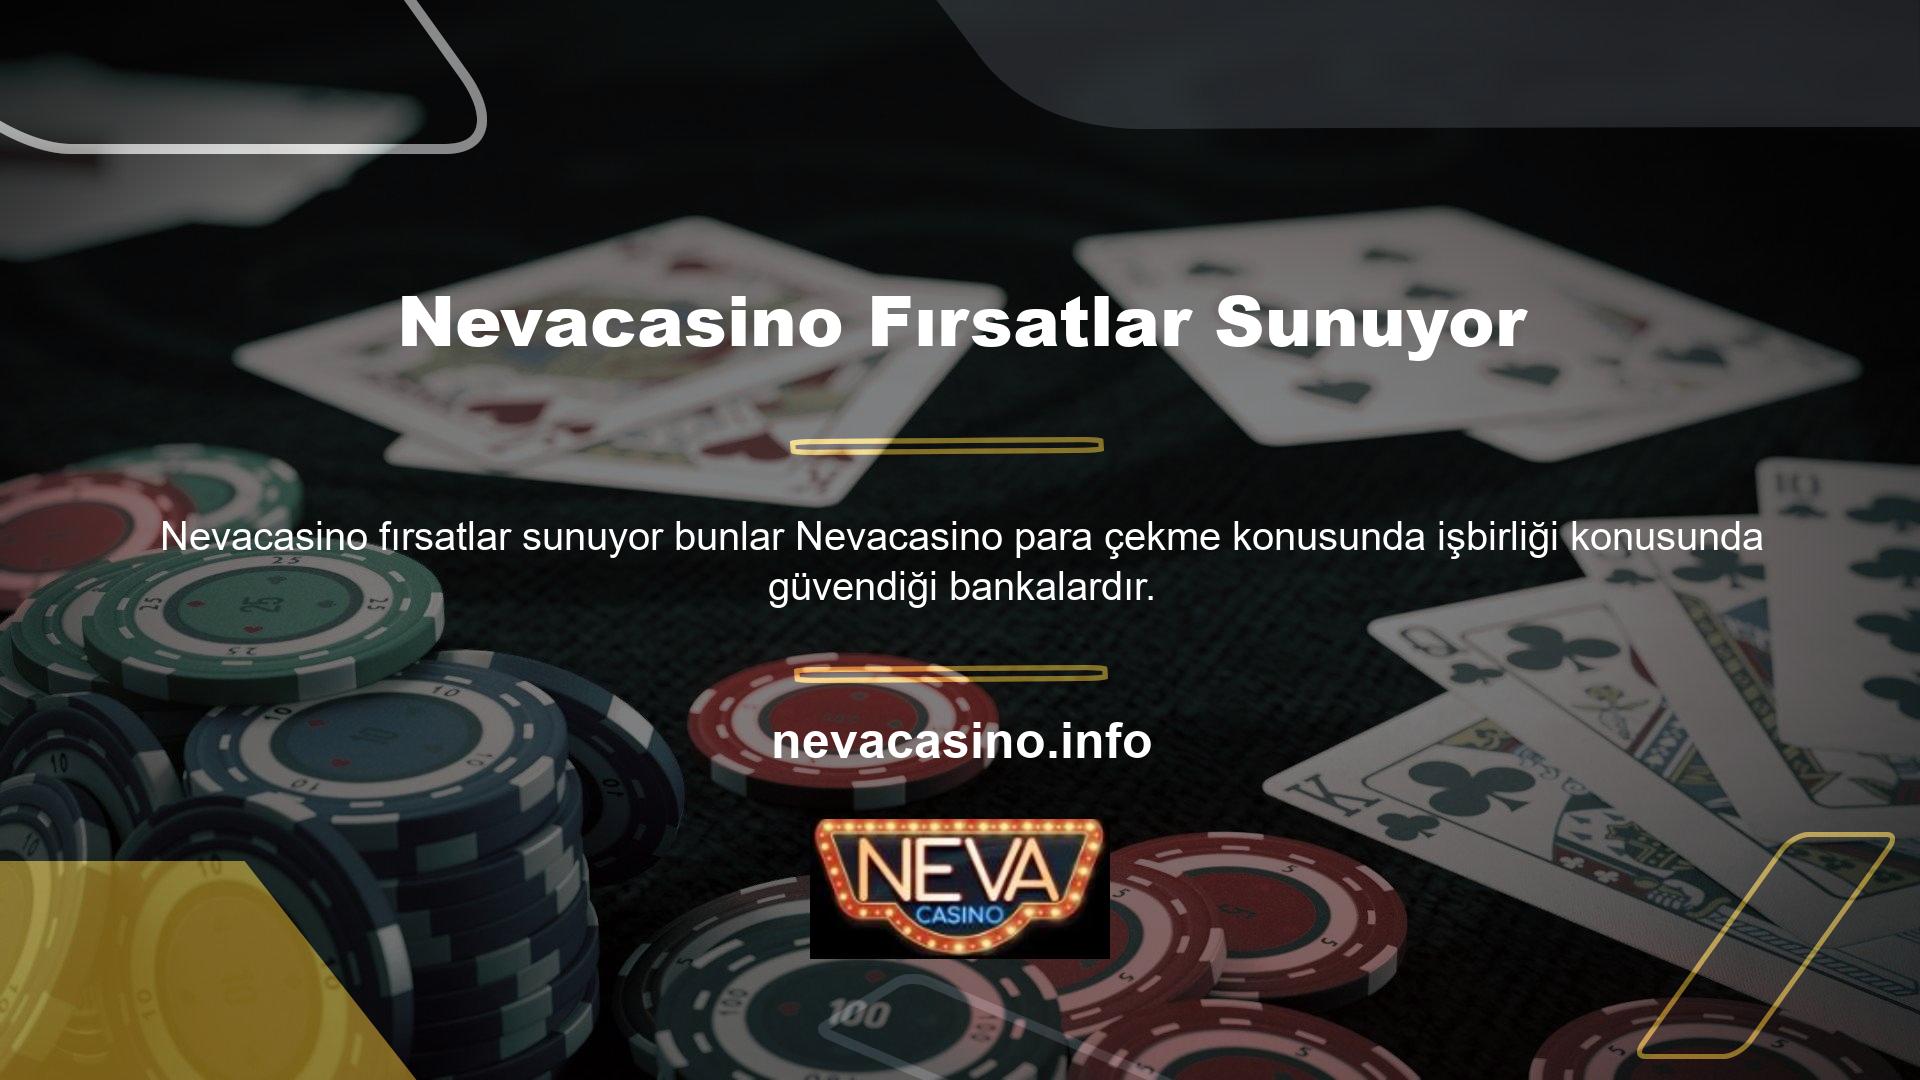 Türk casino sitelerinin desteklenmesi kullanımı kolaylaştırır